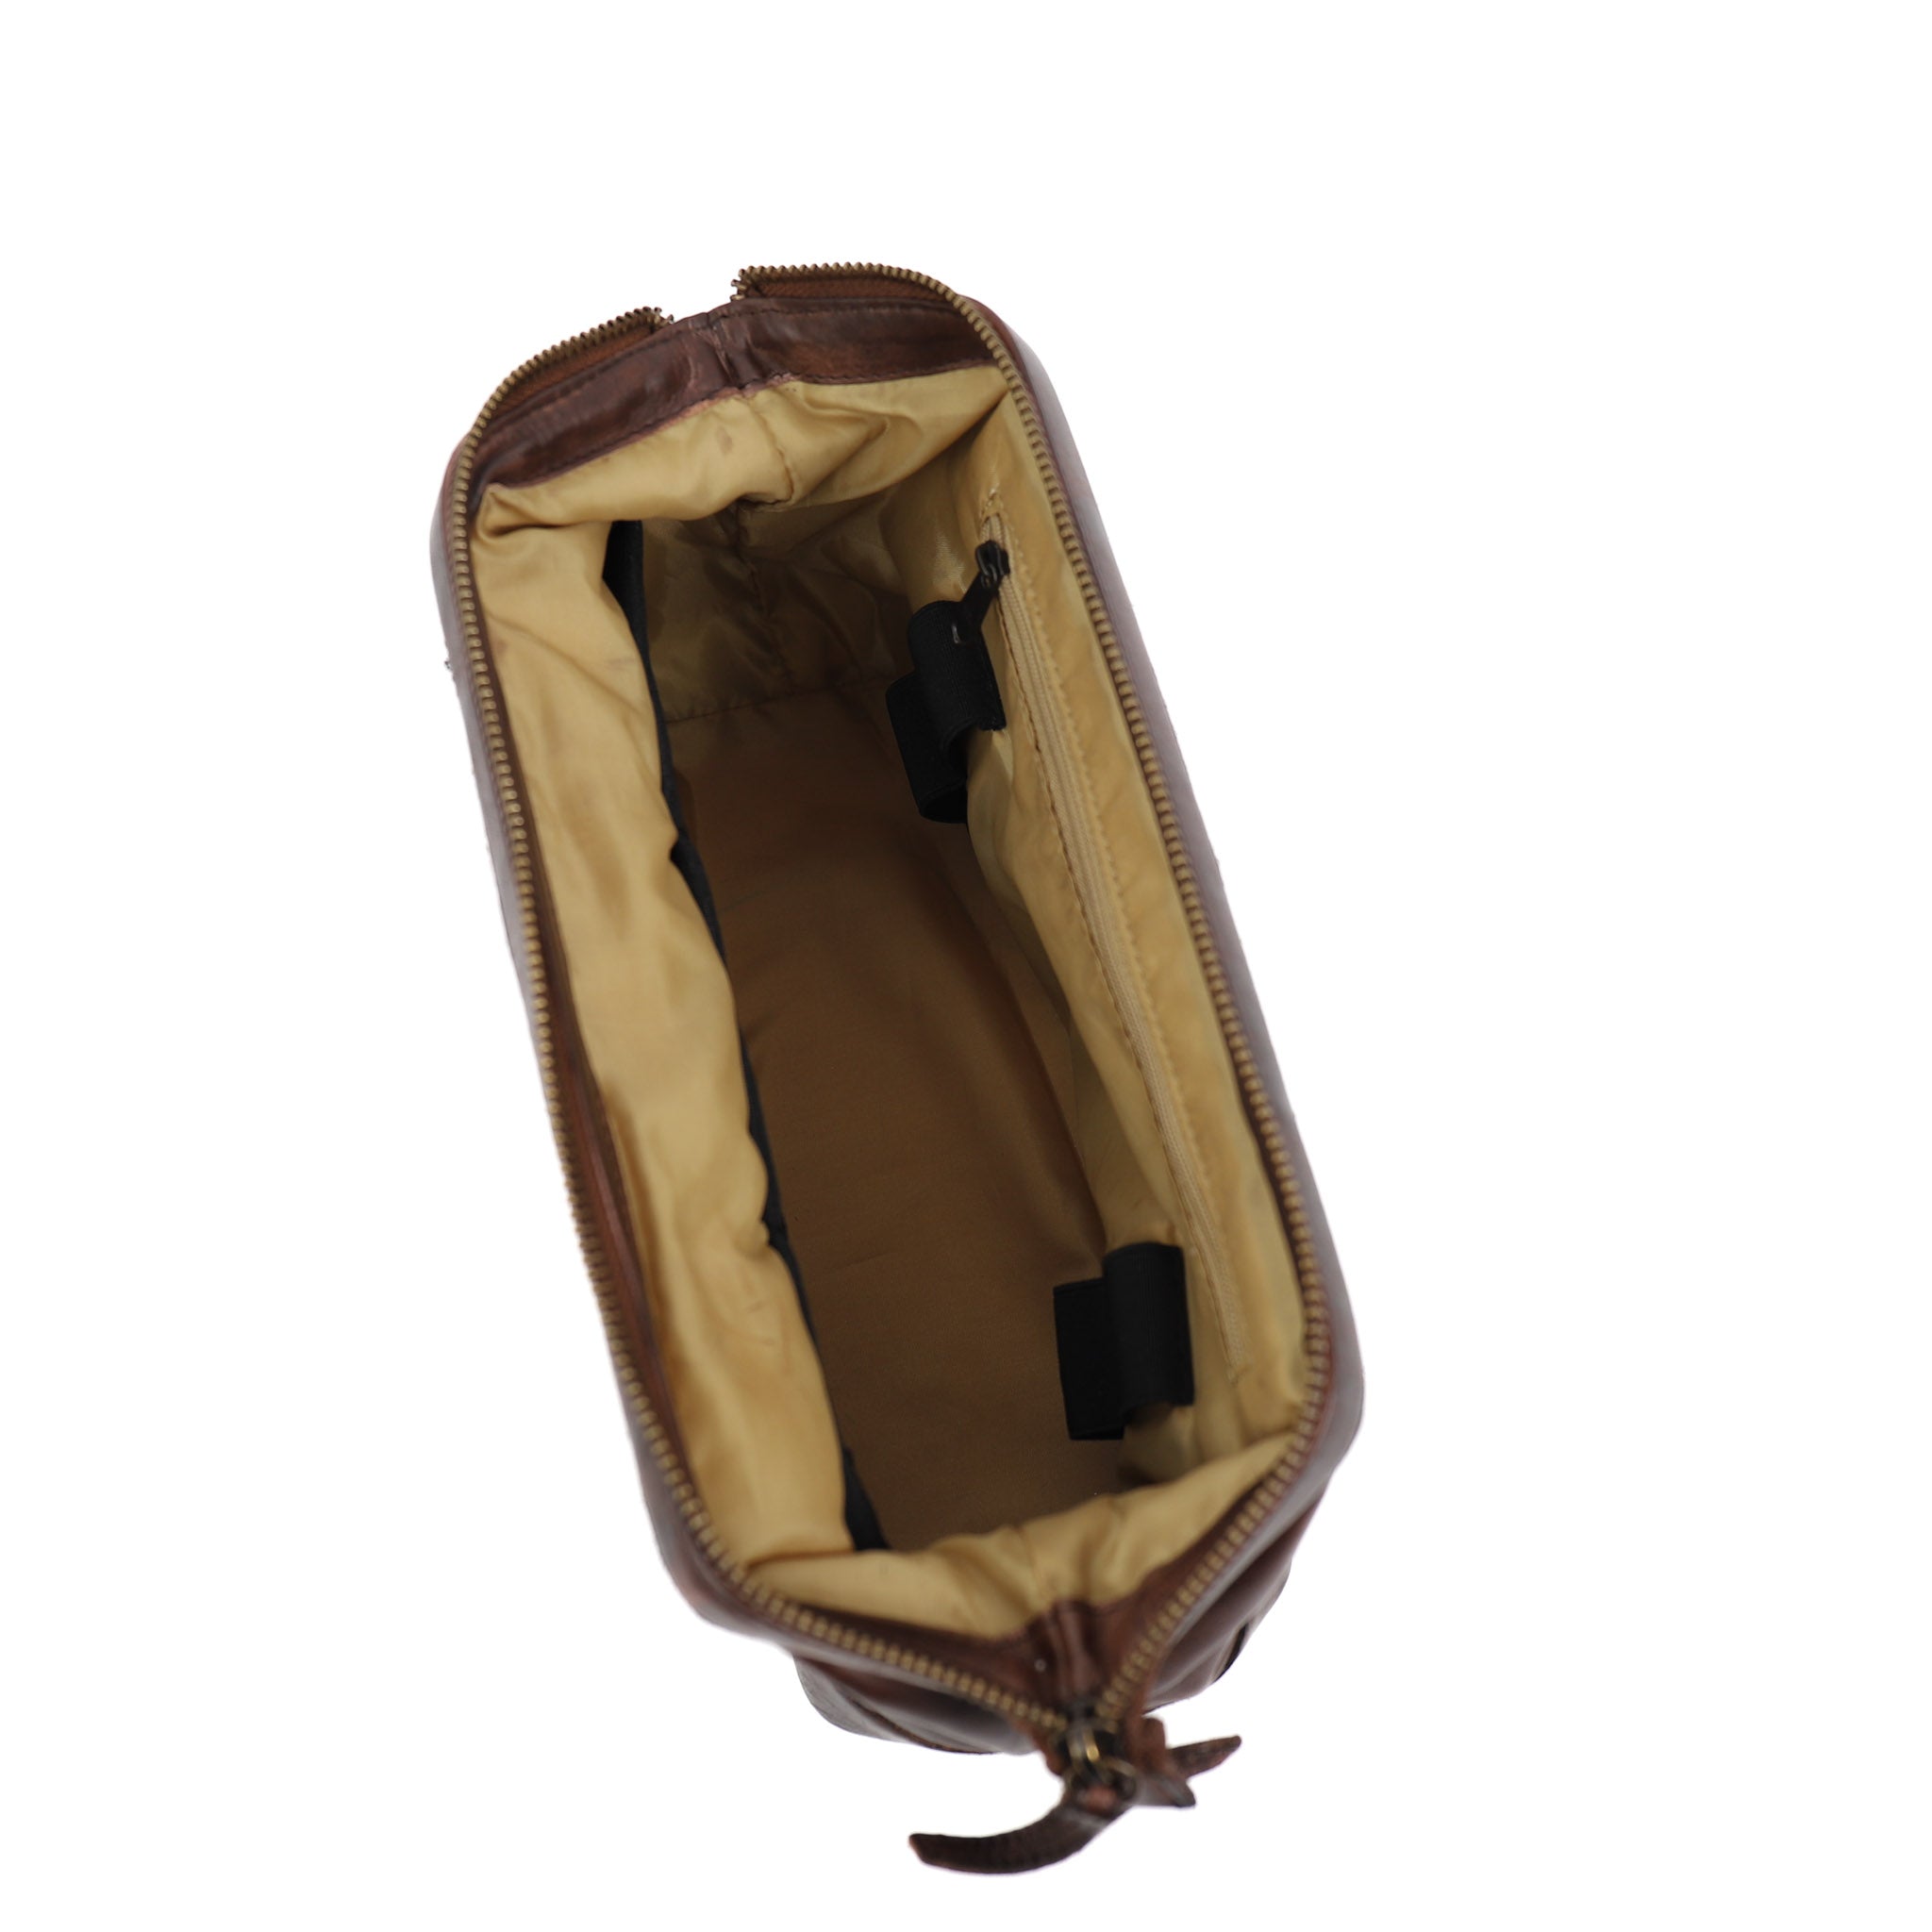 Toiletry bag strap closure 'Oliviër' dark brown